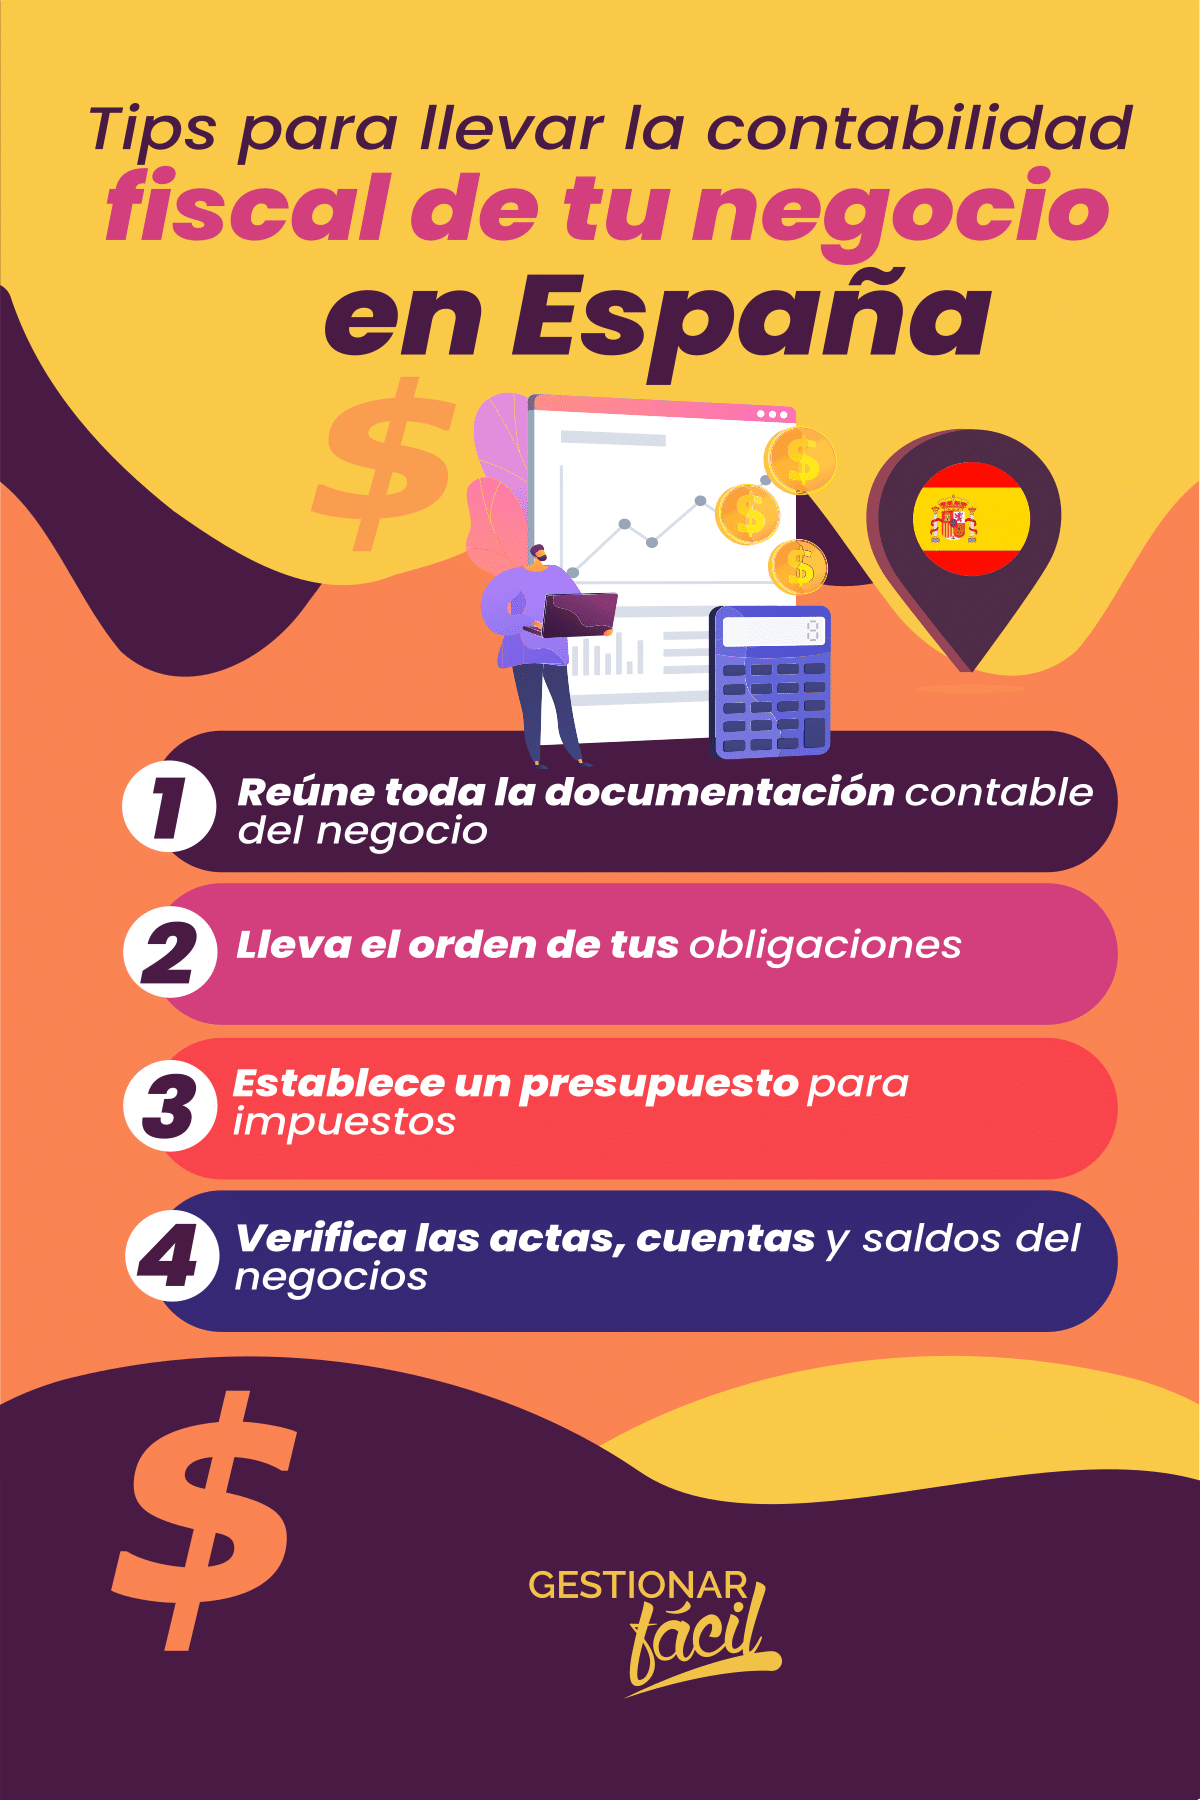 Tips para llevar la contabilidad fiscal de tu negocio en España